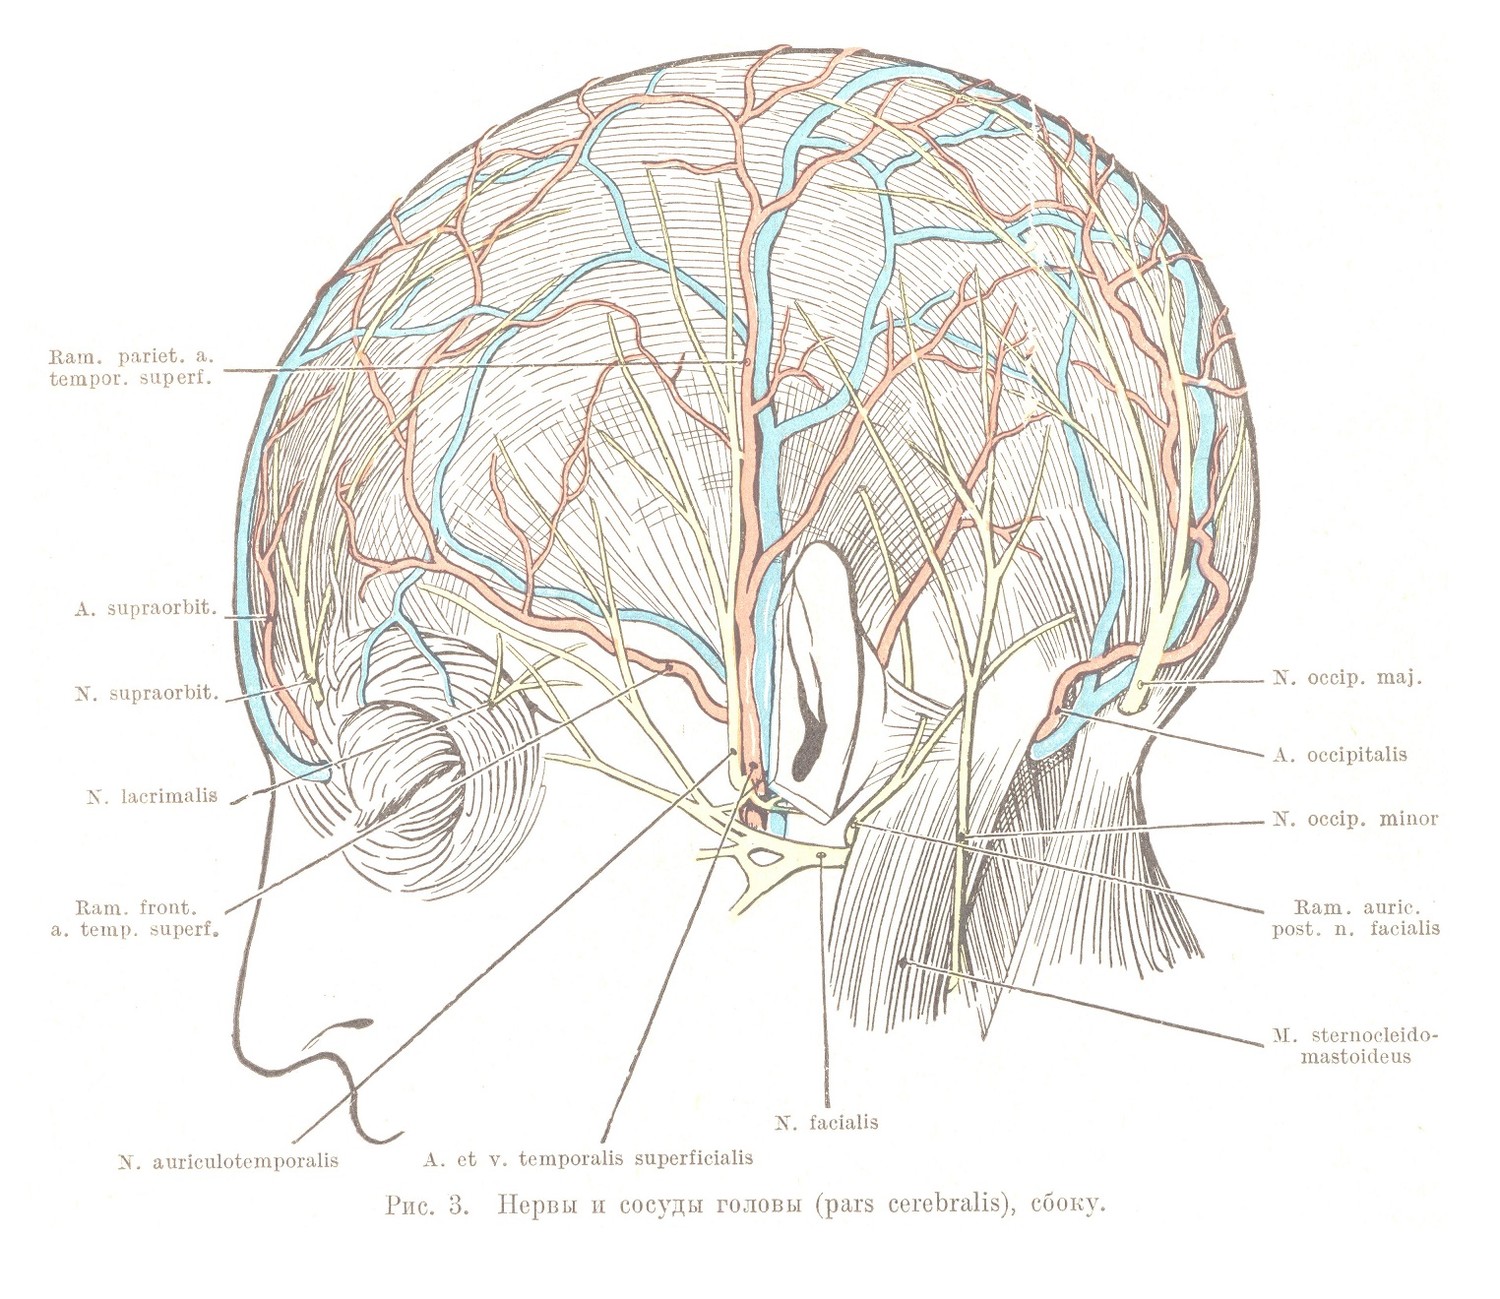 Нервы и сосуды головы (pars cerebralis), сбоку.